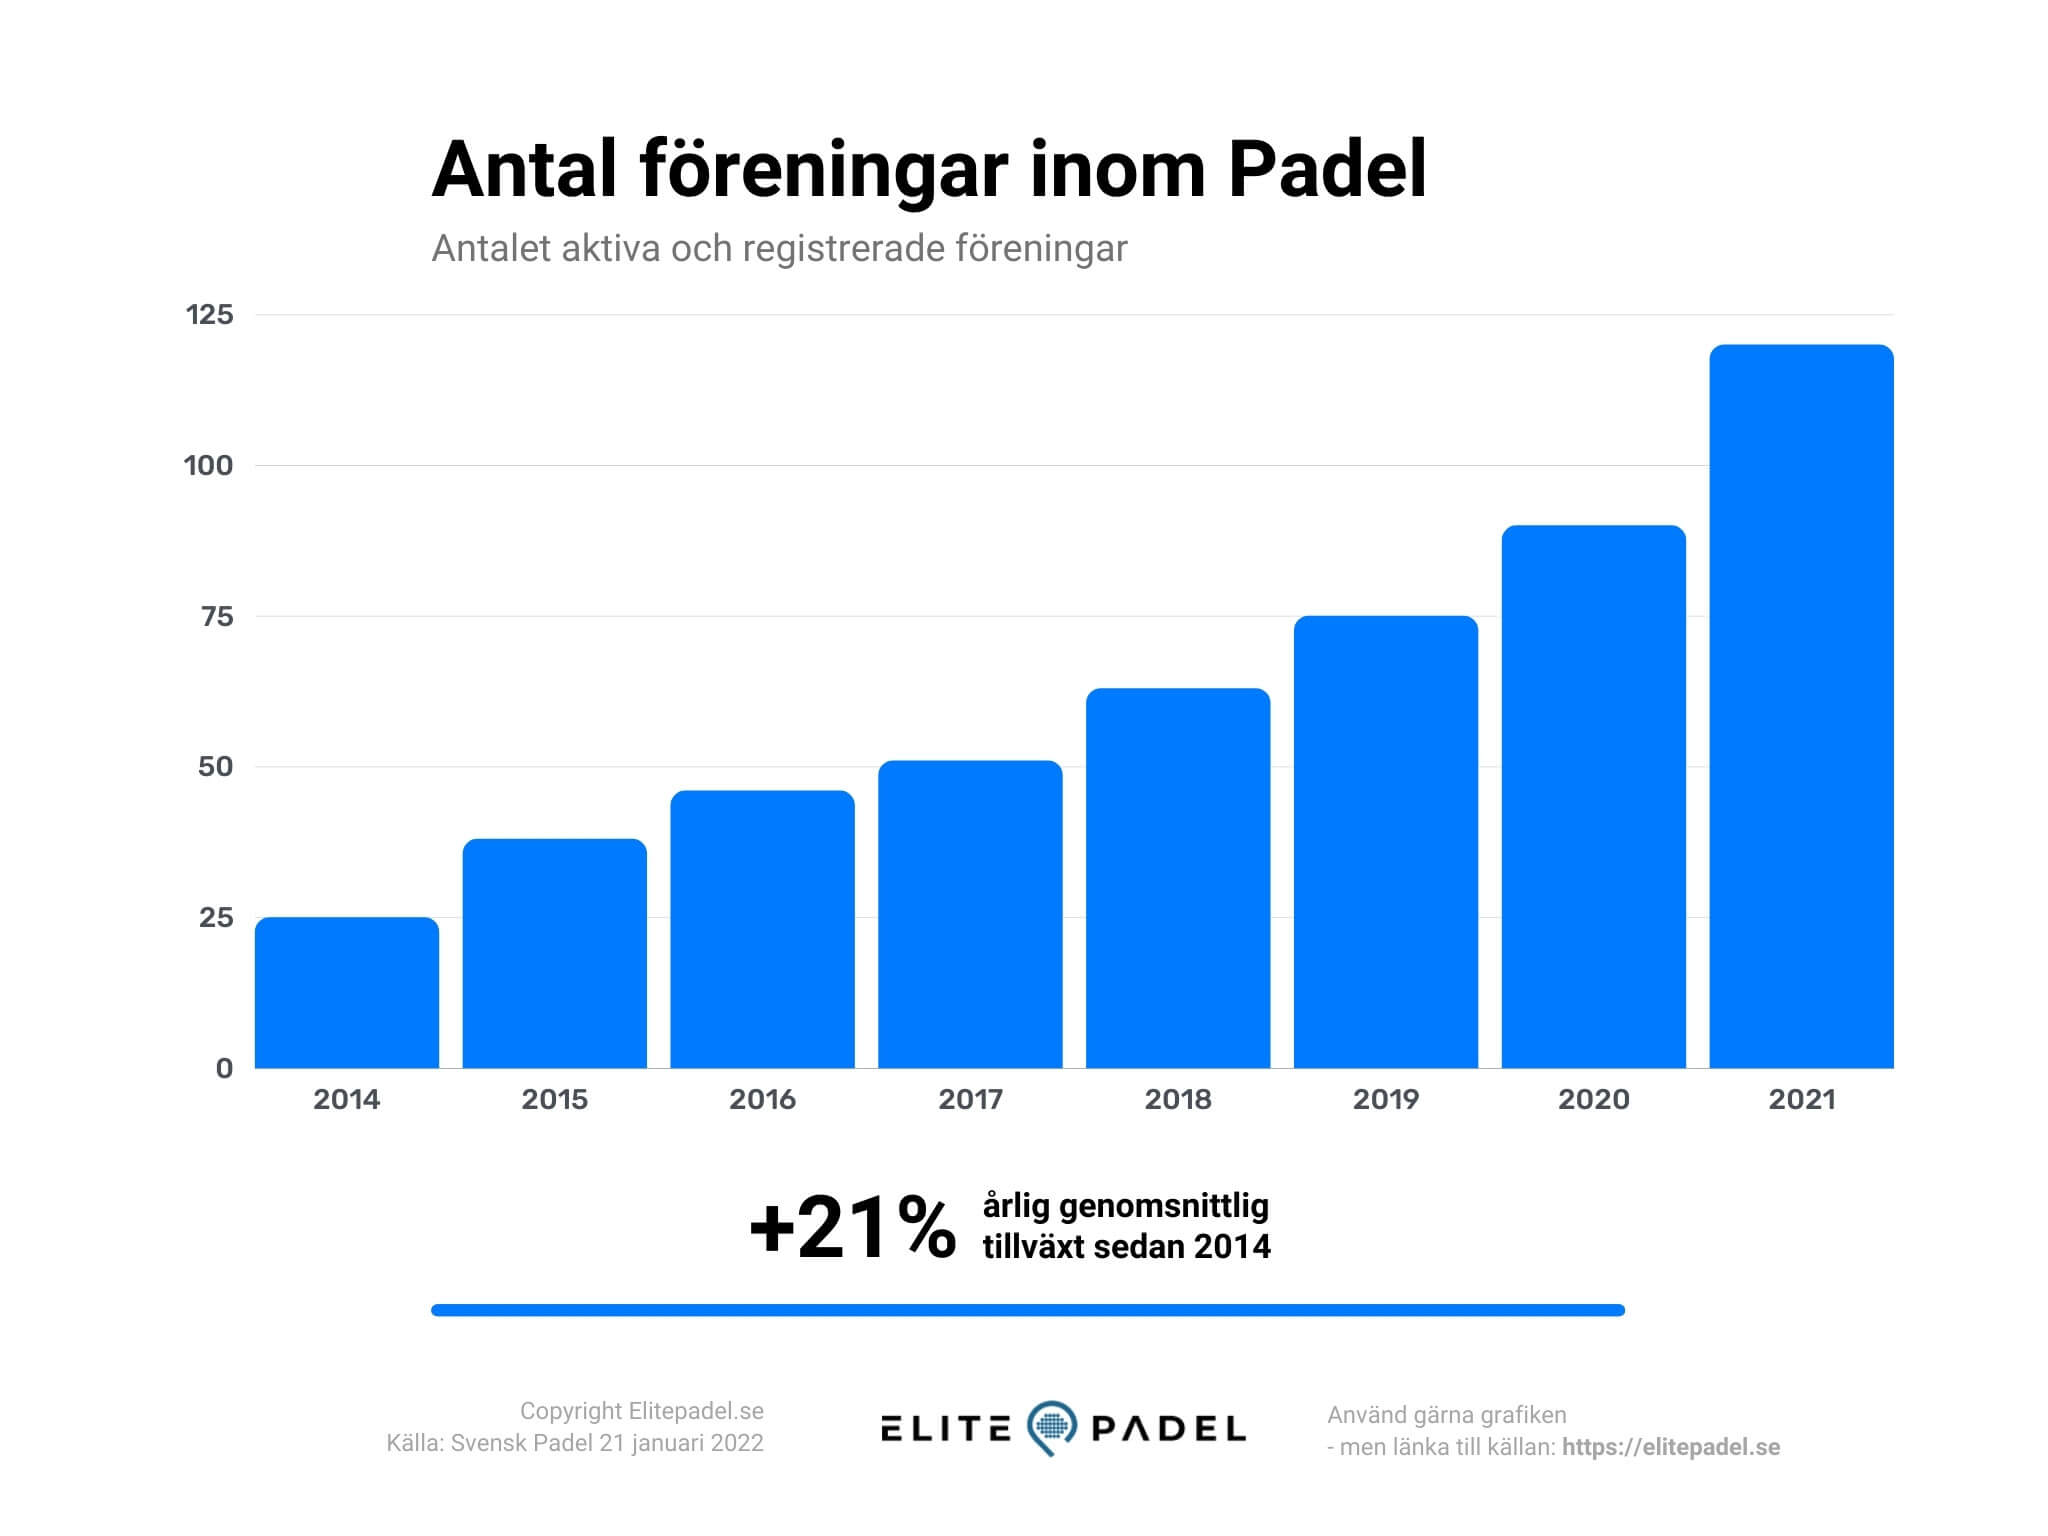 Padel statistik - antal föreringar inom padel i Sverige